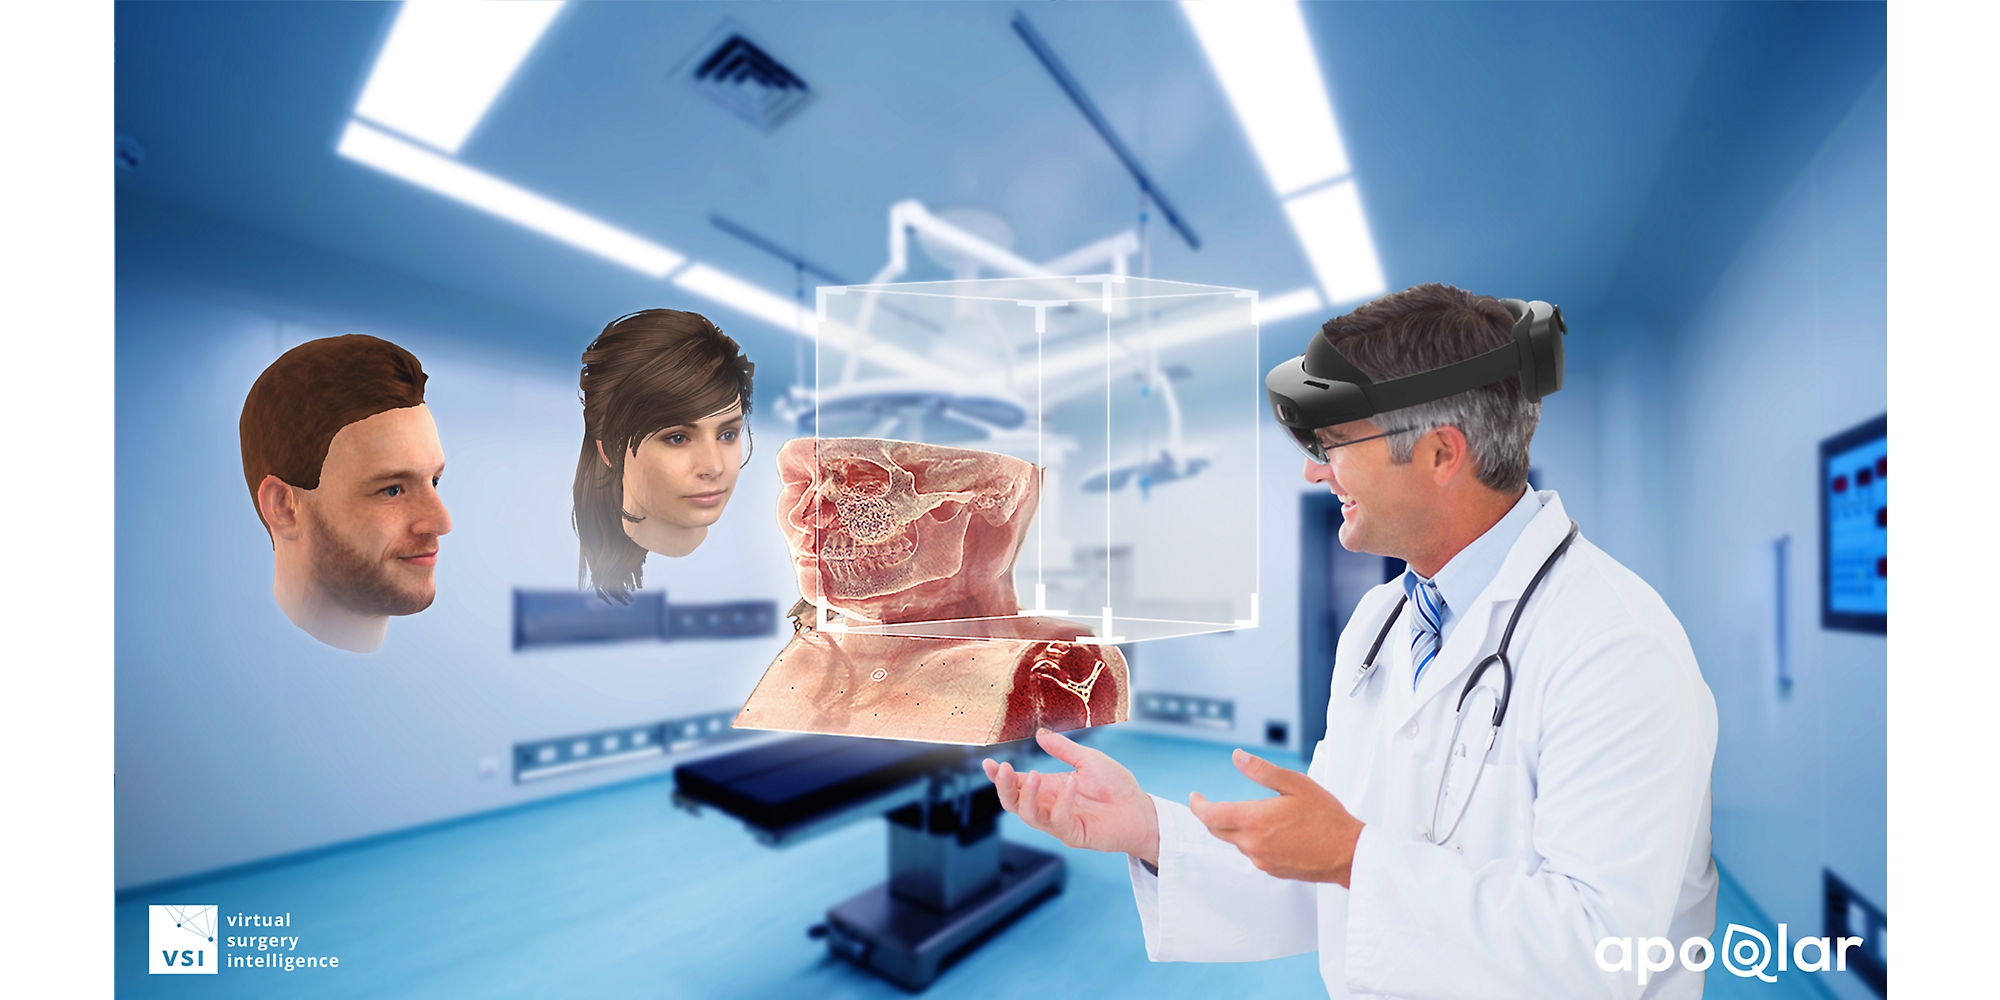 En læge bruger en HoloLens 2-enhed til at se et medicinsk diagram og tale med to andre personer i mixed reality.